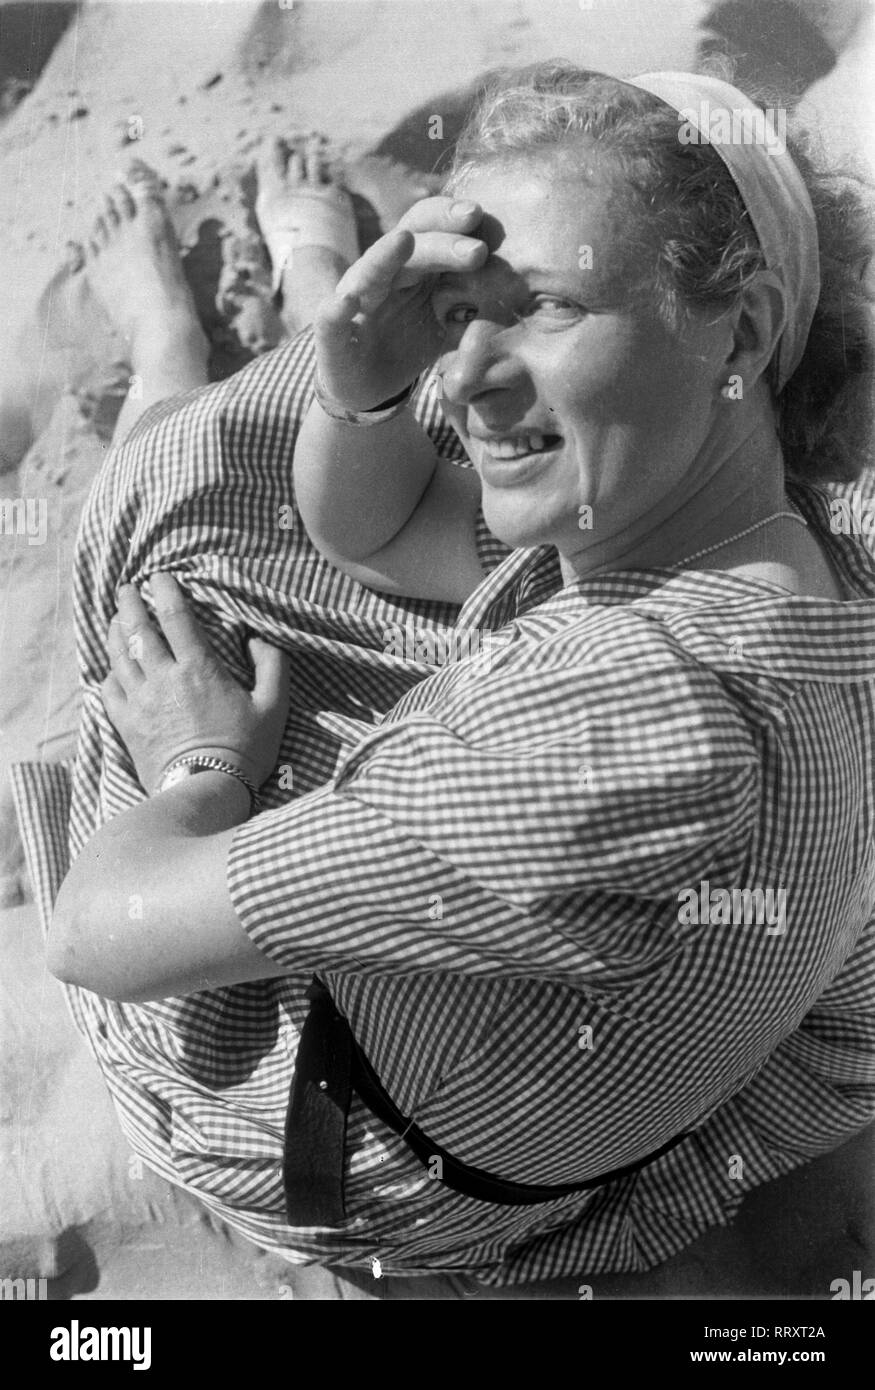 Frankreich - France in 1940. Arcachon - woman on the beach - blinded by the sun. Photo by Erich Andres. Frankreich ca. 1940, Arcachon, Frau wird von der Sonne geblendet Stock Photo